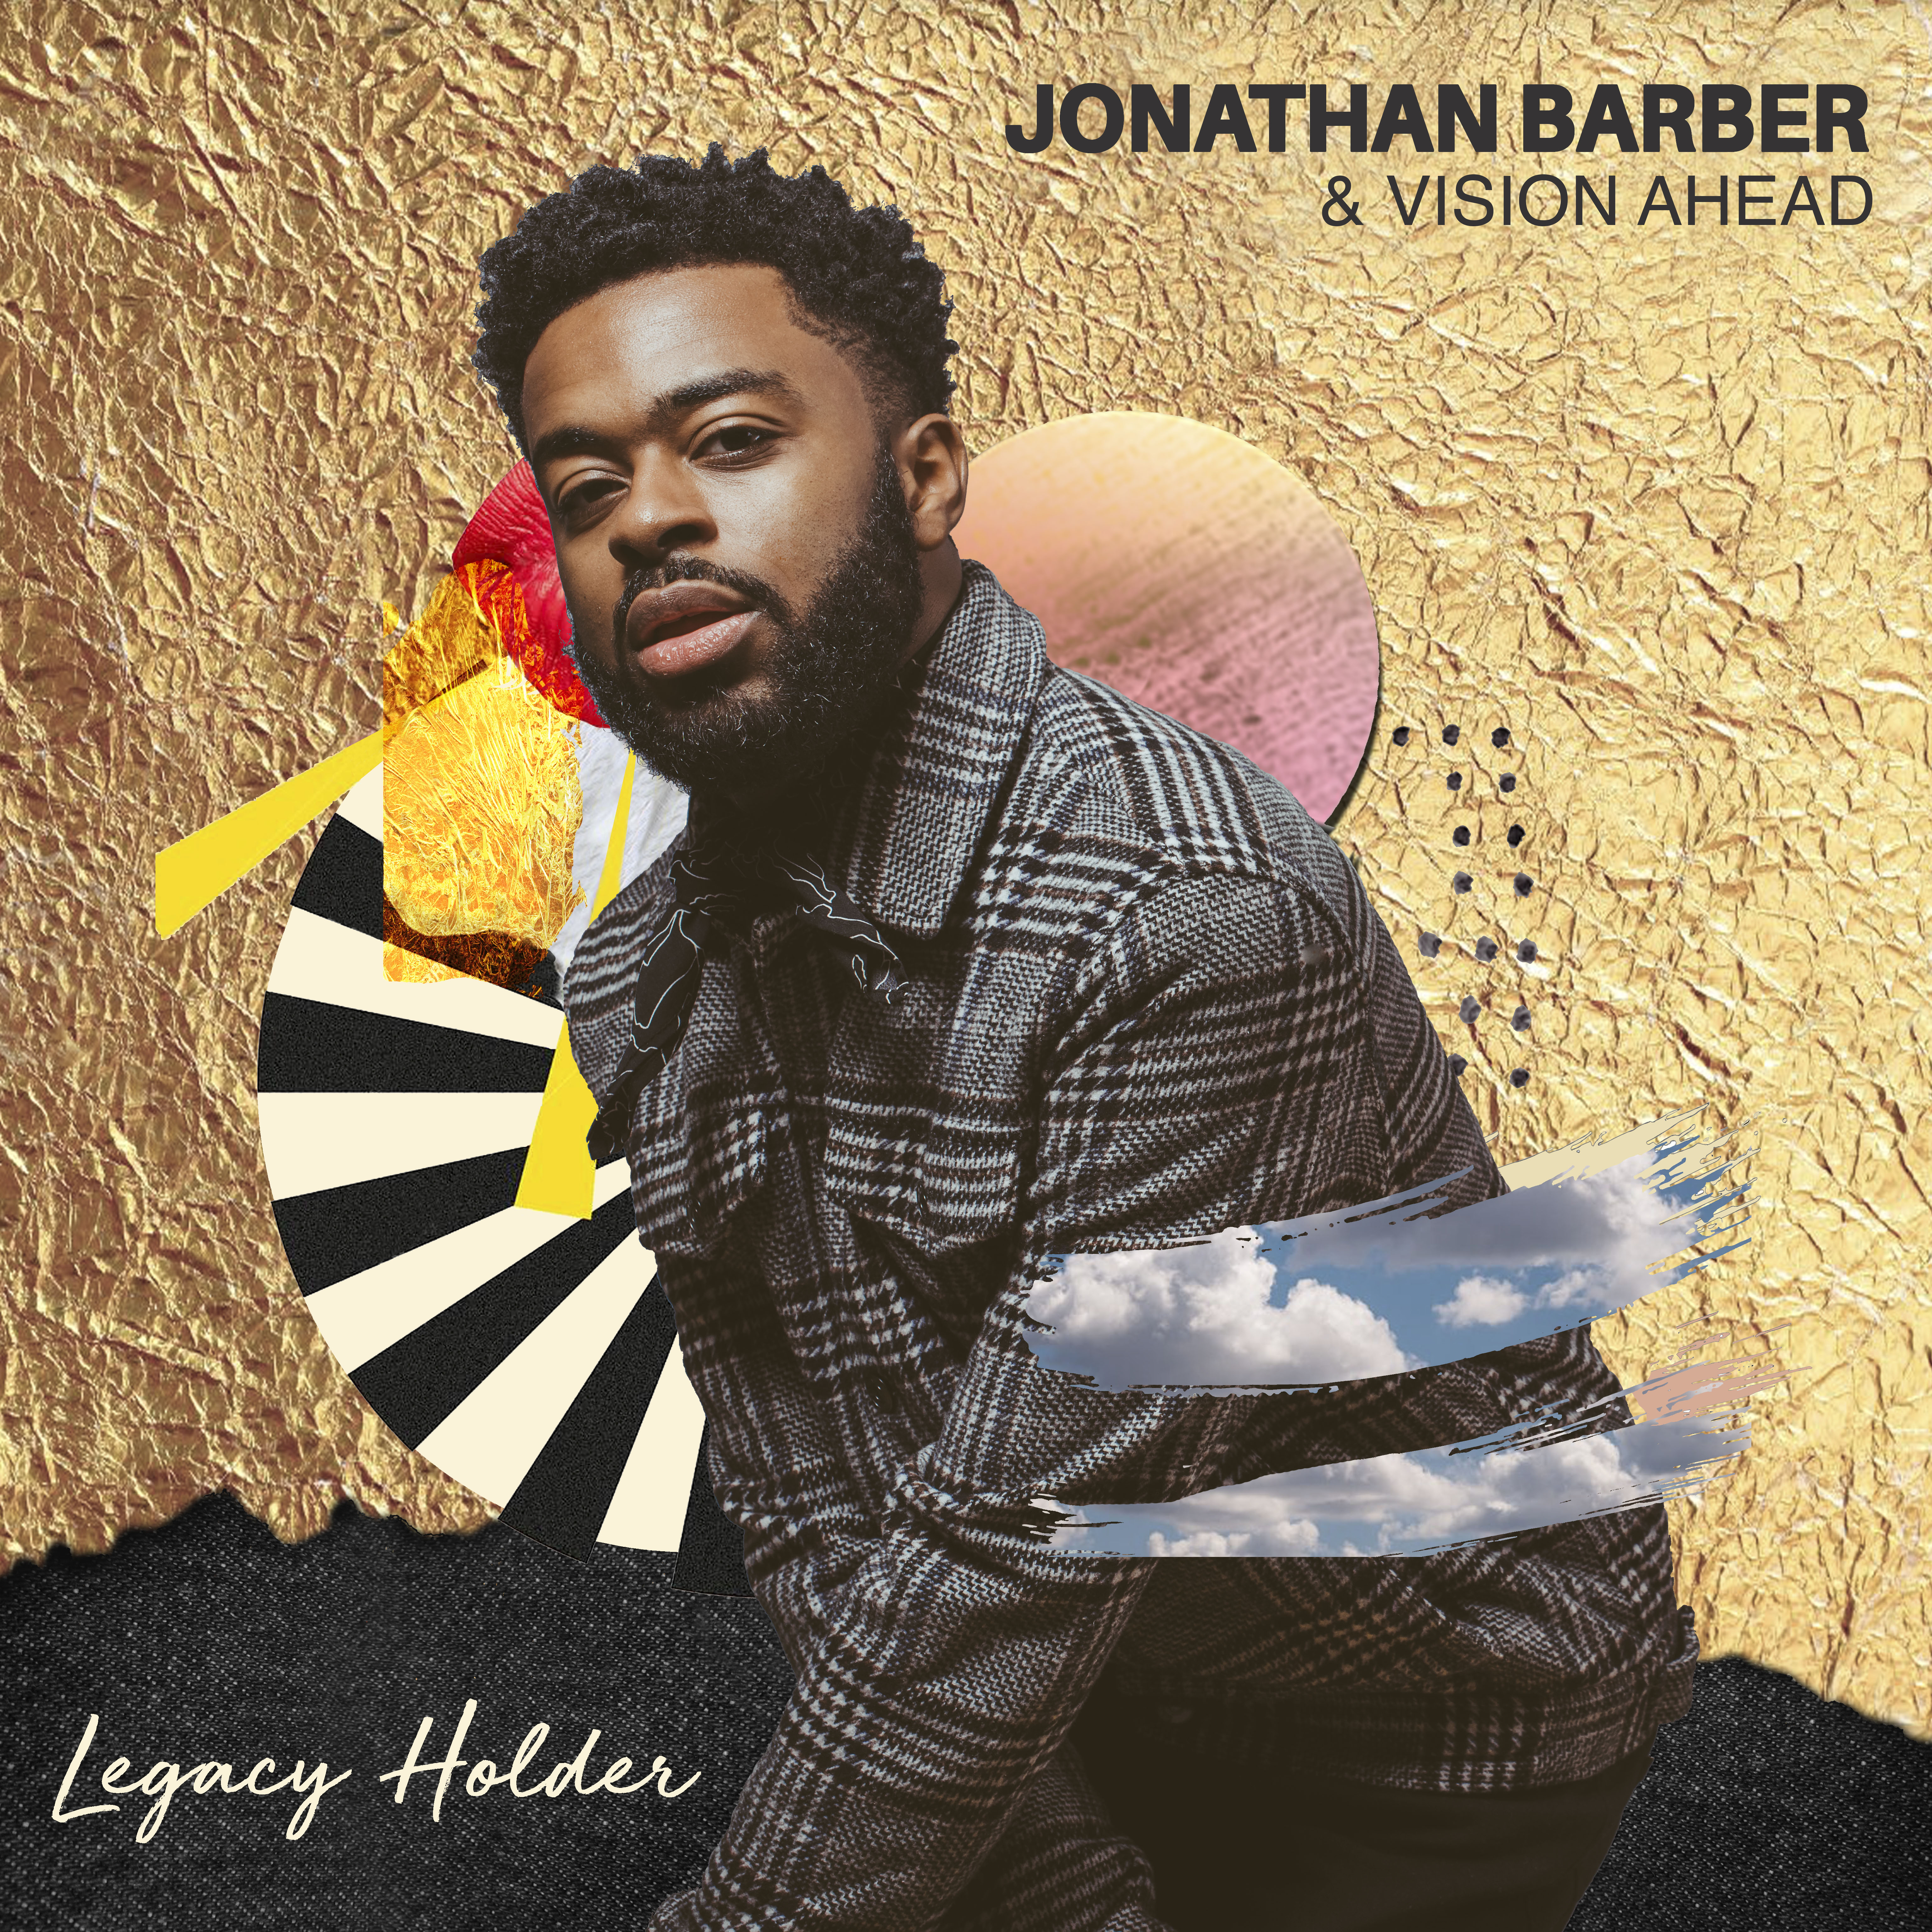 JB-album-cover Legacy Holder